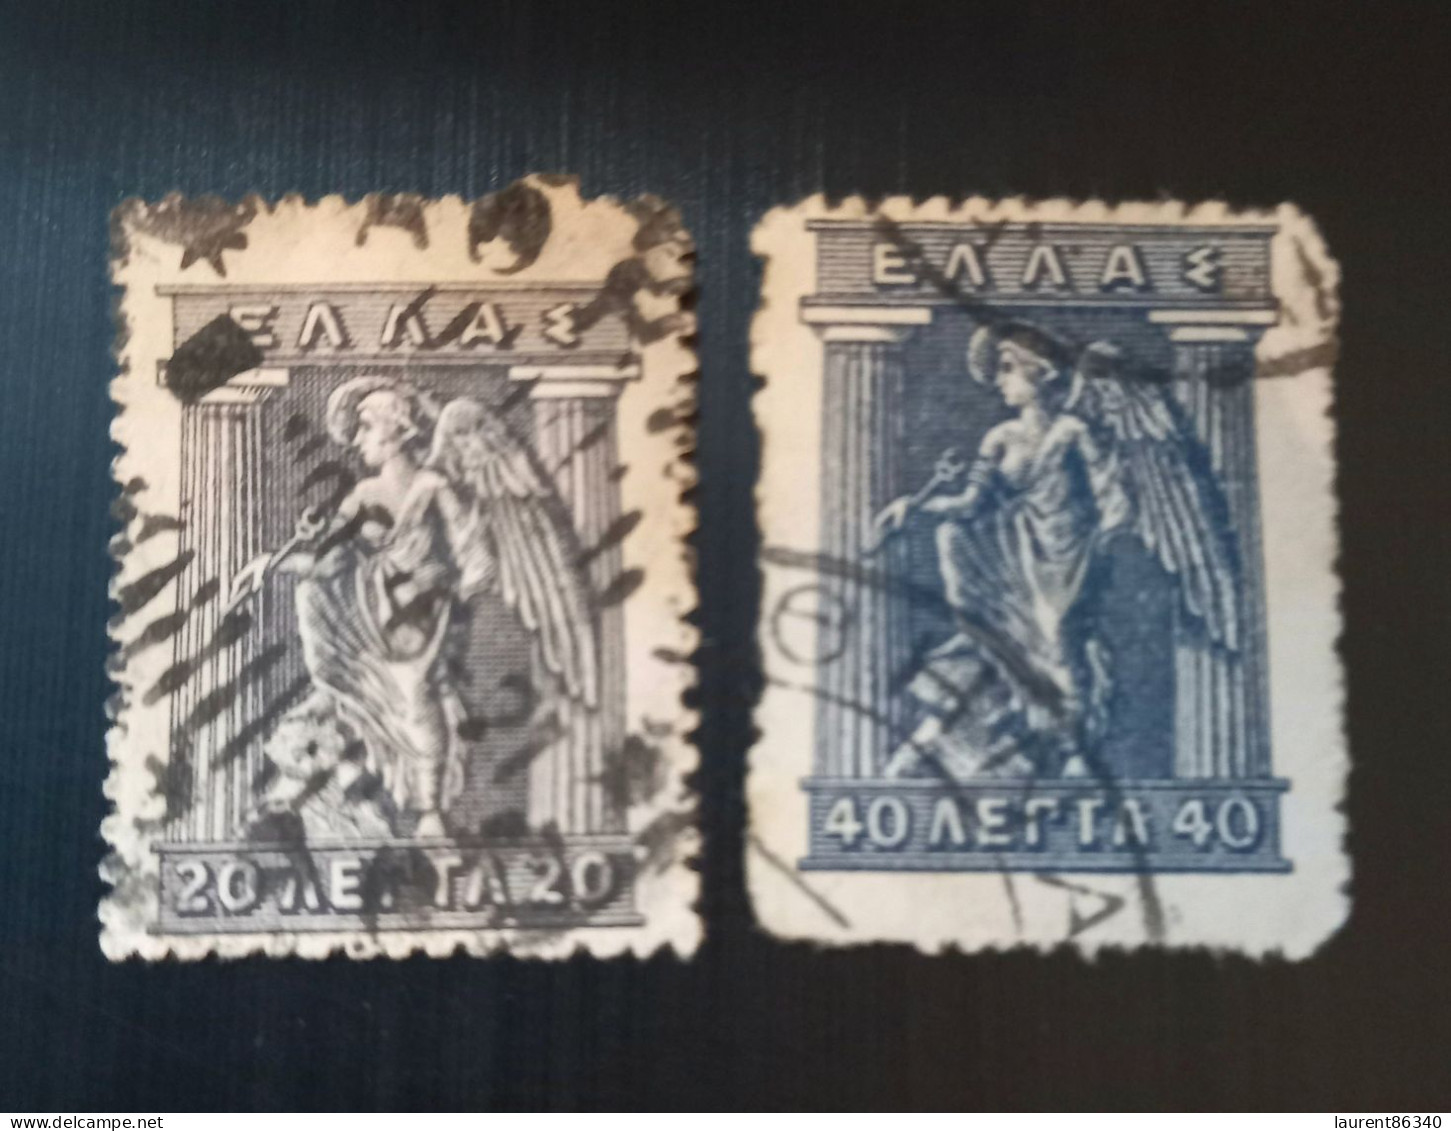 Grèce 1911 -1921 Mythological Figures - Engraved Issue Lot 2 - Gebruikt